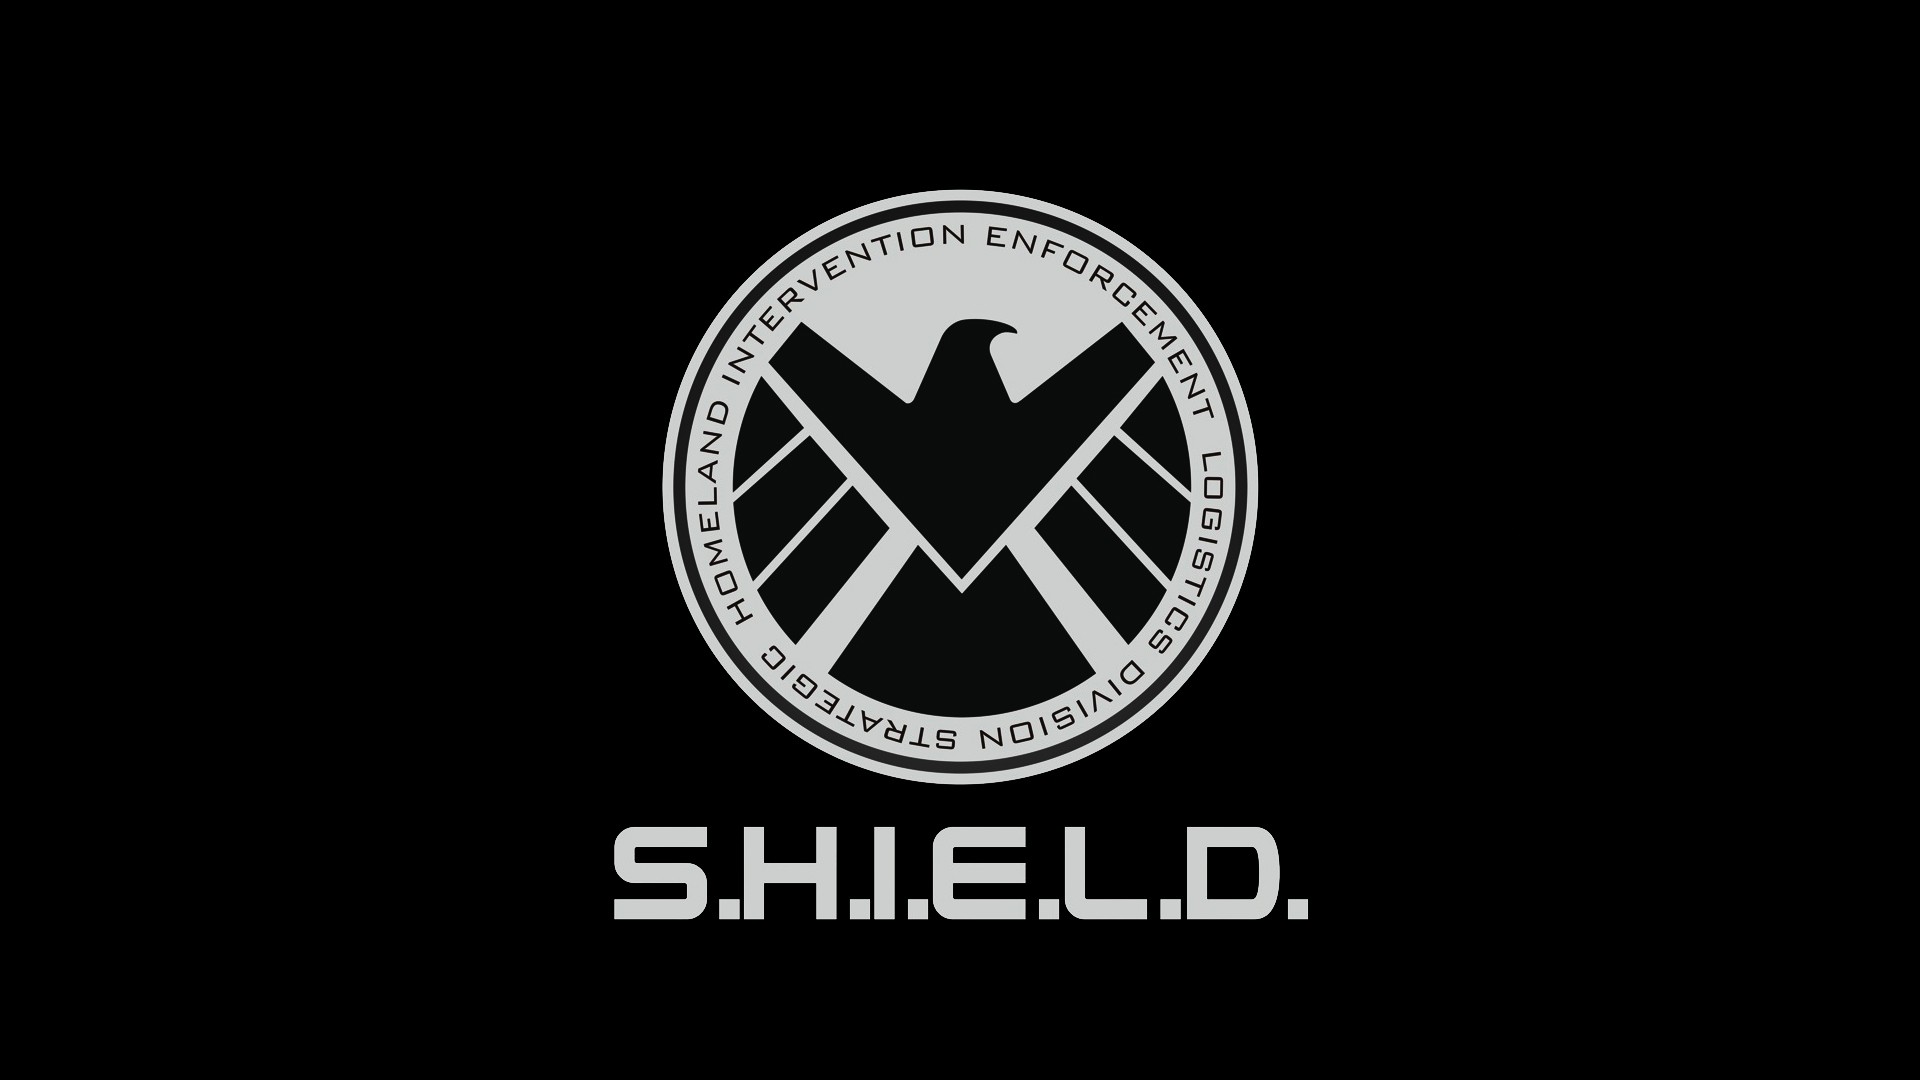 General 1920x1080 S.H.I.E.L.D. simple background Marvel Cinematic Universe Marvel TV logo black background